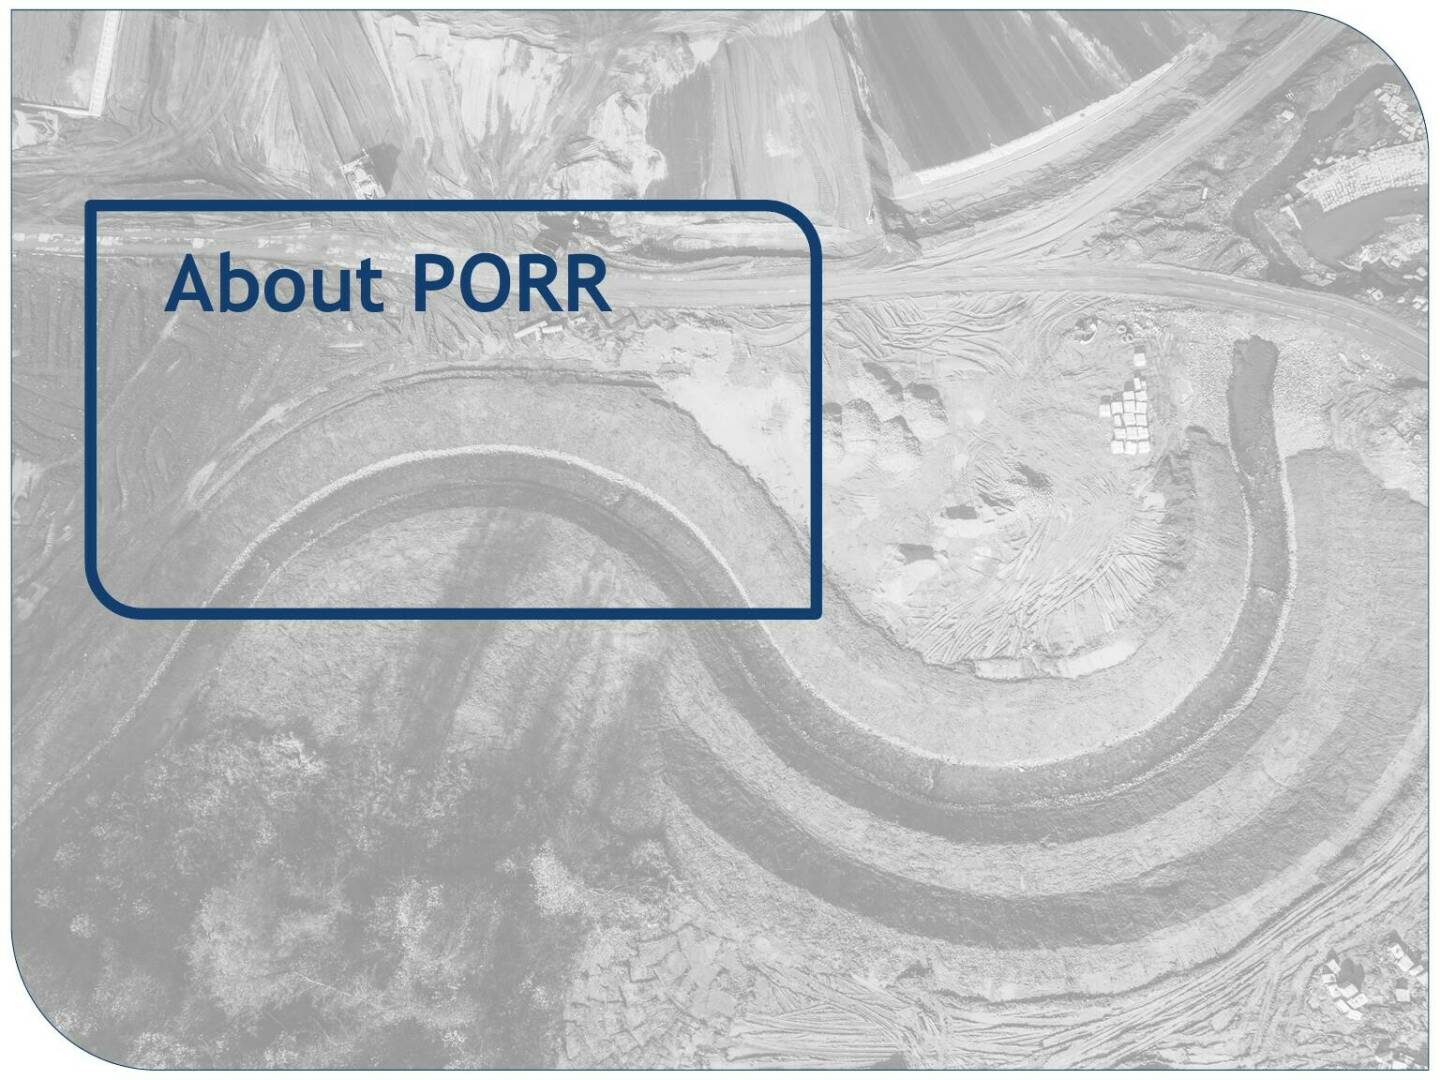 Porr - About Porr